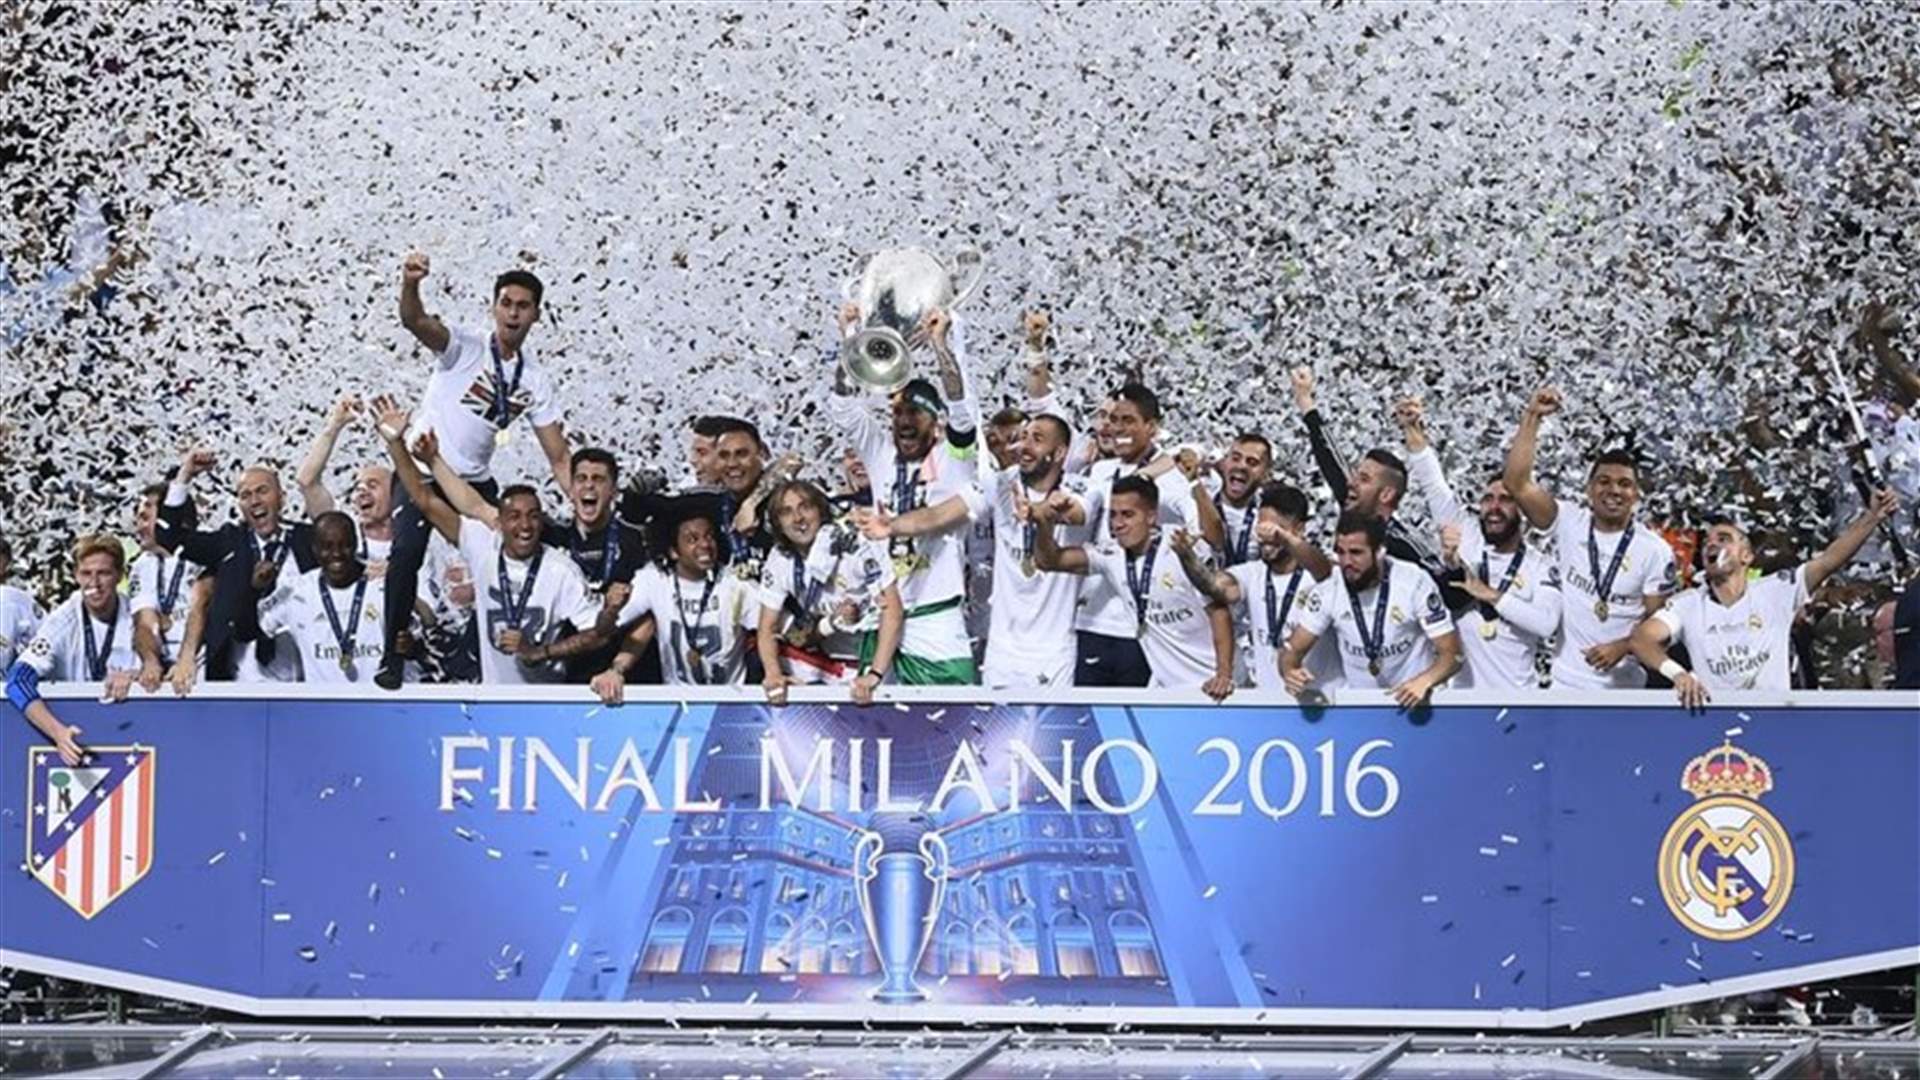 ركلات الترجيح تهدي ريال مدريد لقب دوري أبطال اوروبا للمرة الـ 11 بتاريخه 